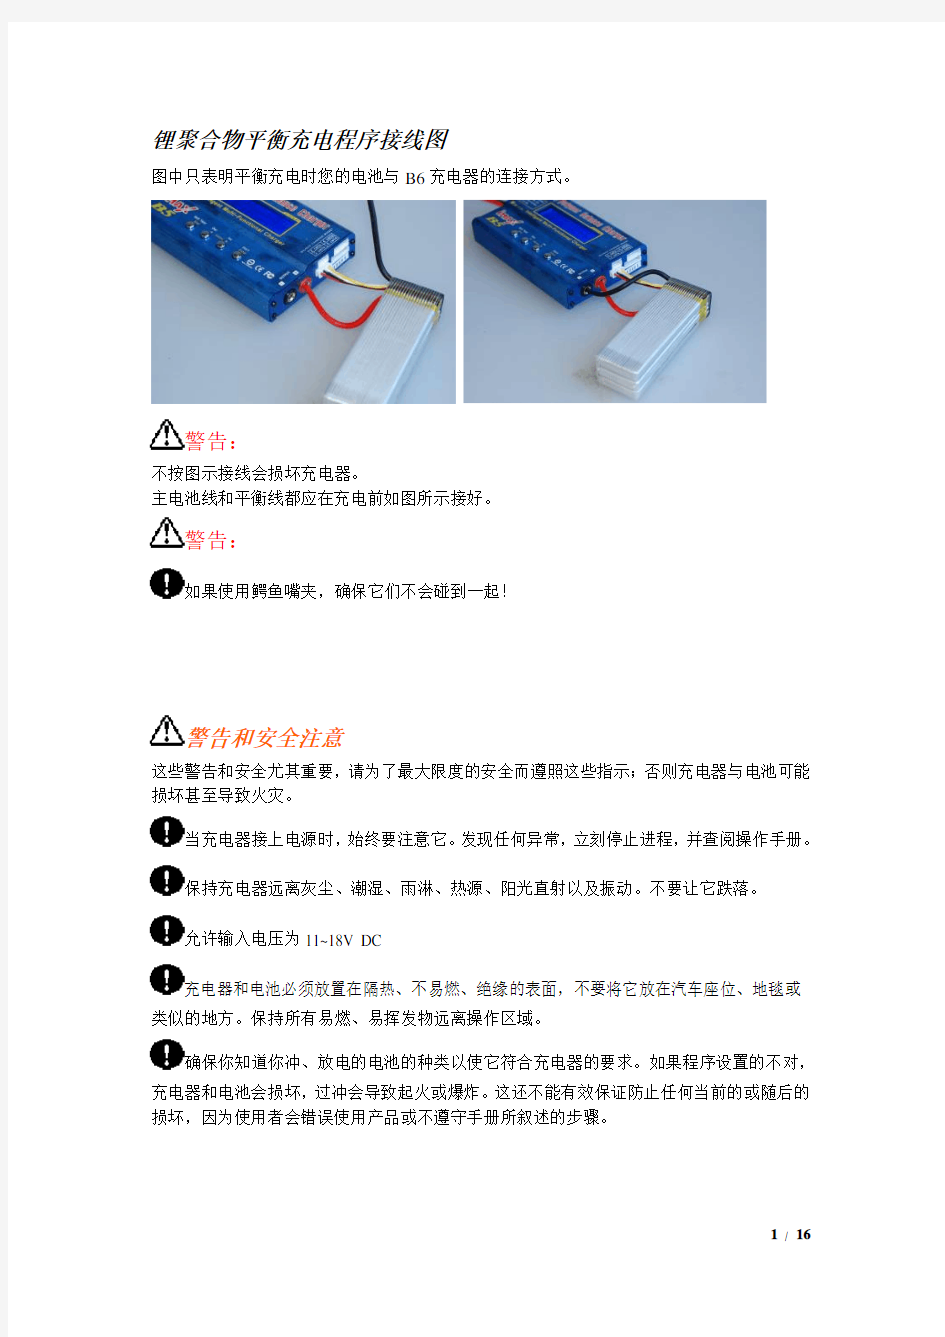 imaB充电器说明书中文翻译完美打印版